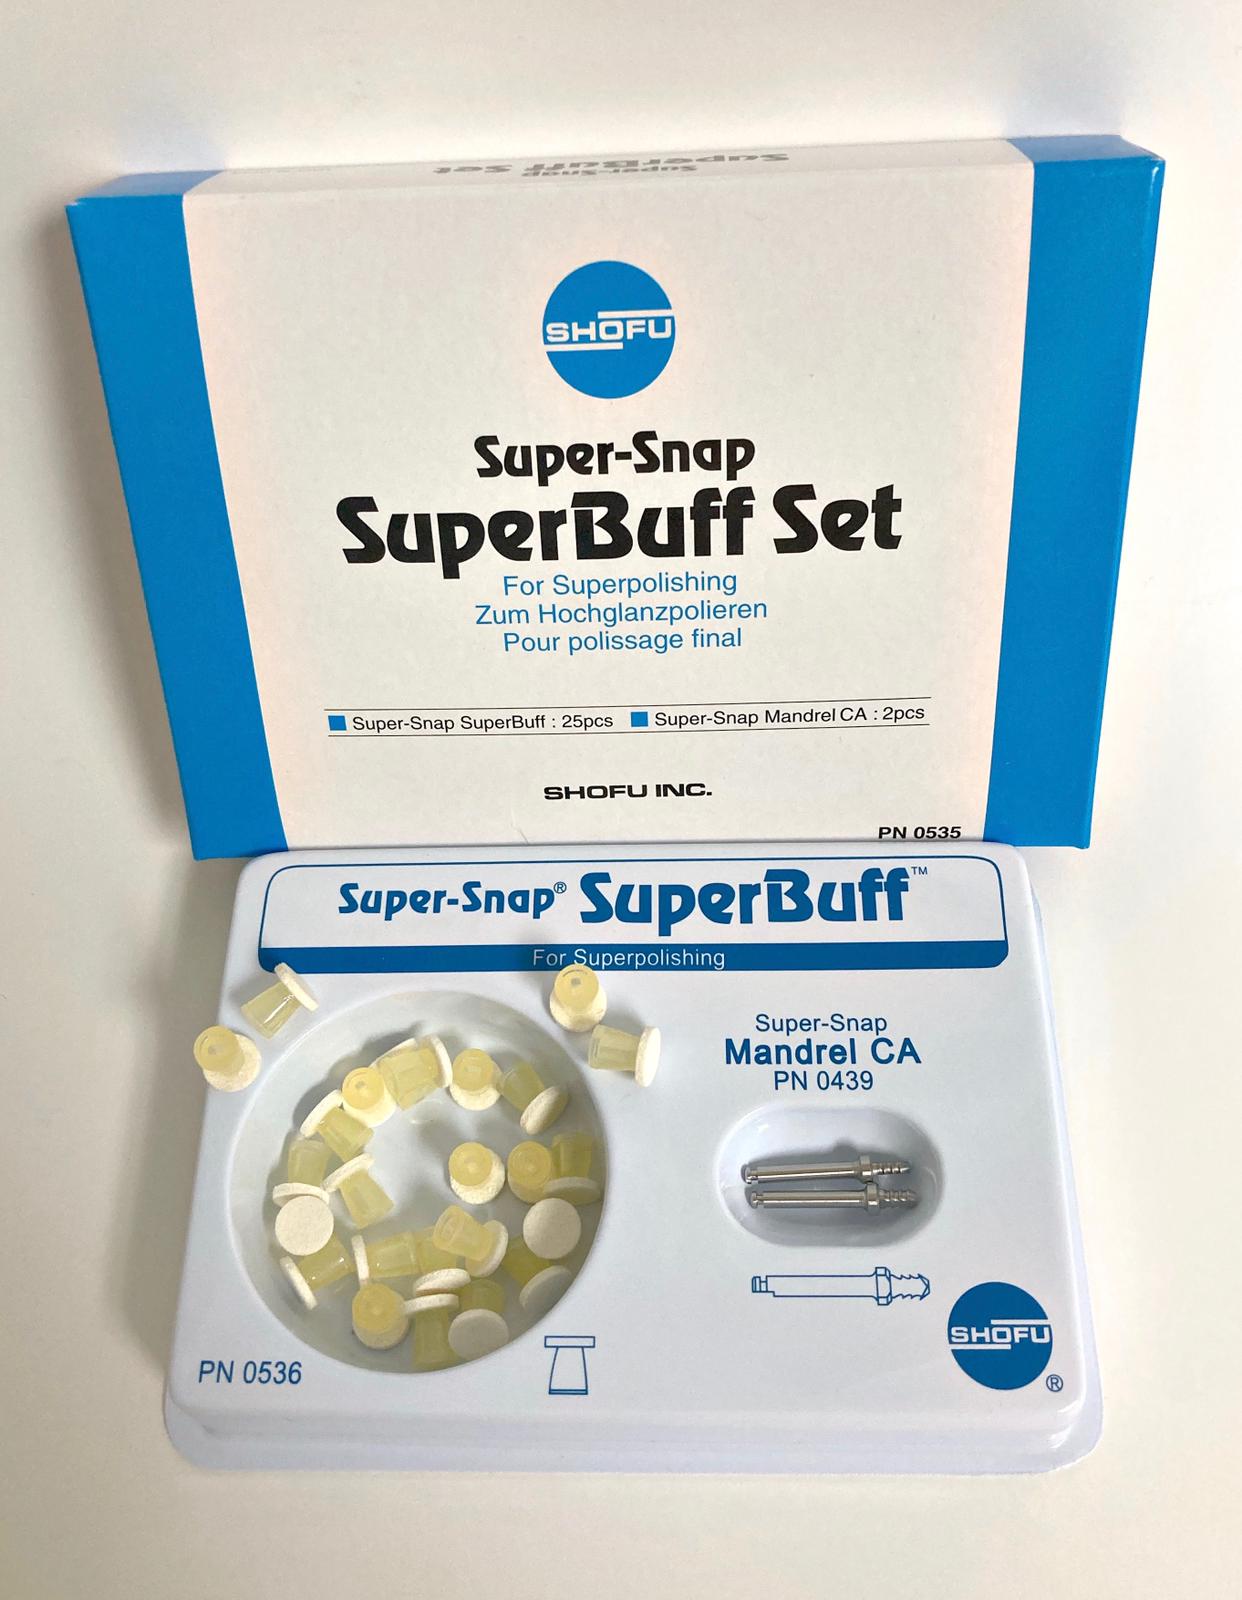 Super-Snap SuperBuff Set